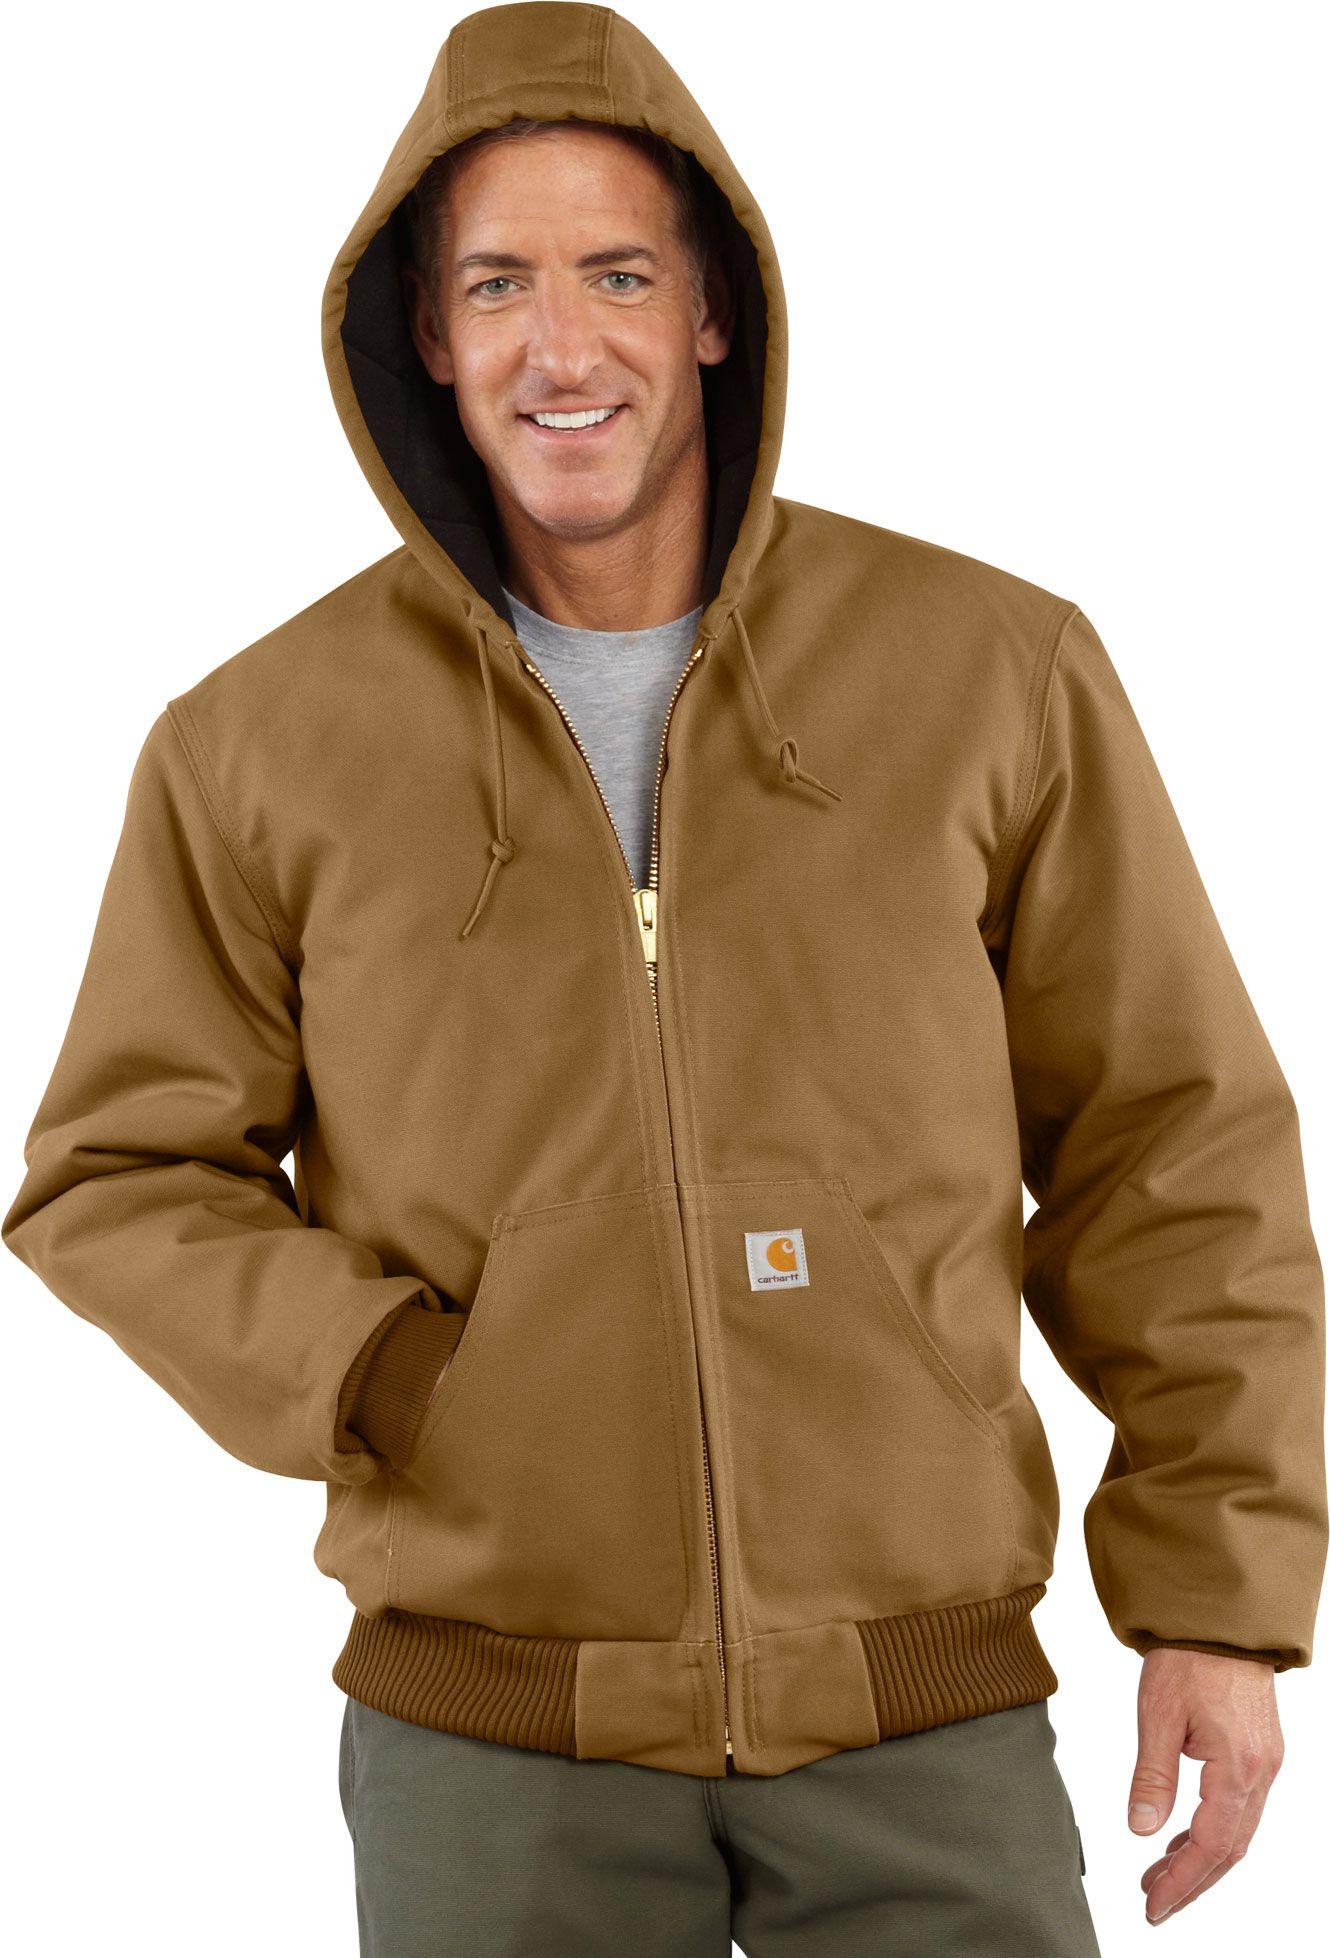 Carhartt Flannel J140 Duck Active Jacket in Brown for Men - Lyst